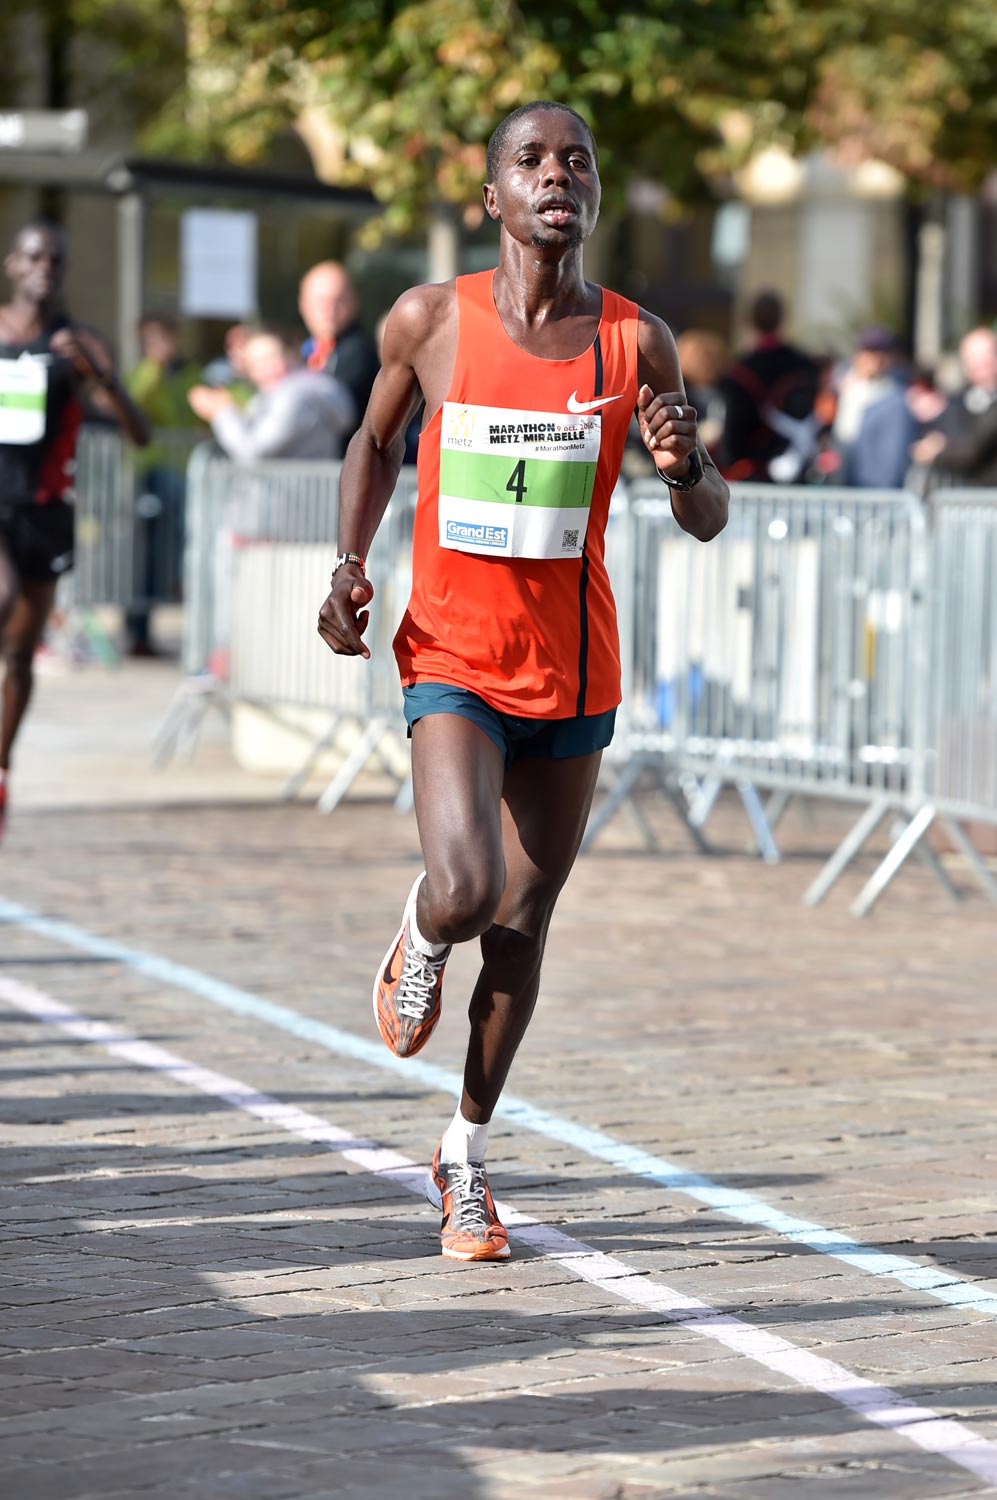 Marathon Metz Mirabelle 2016